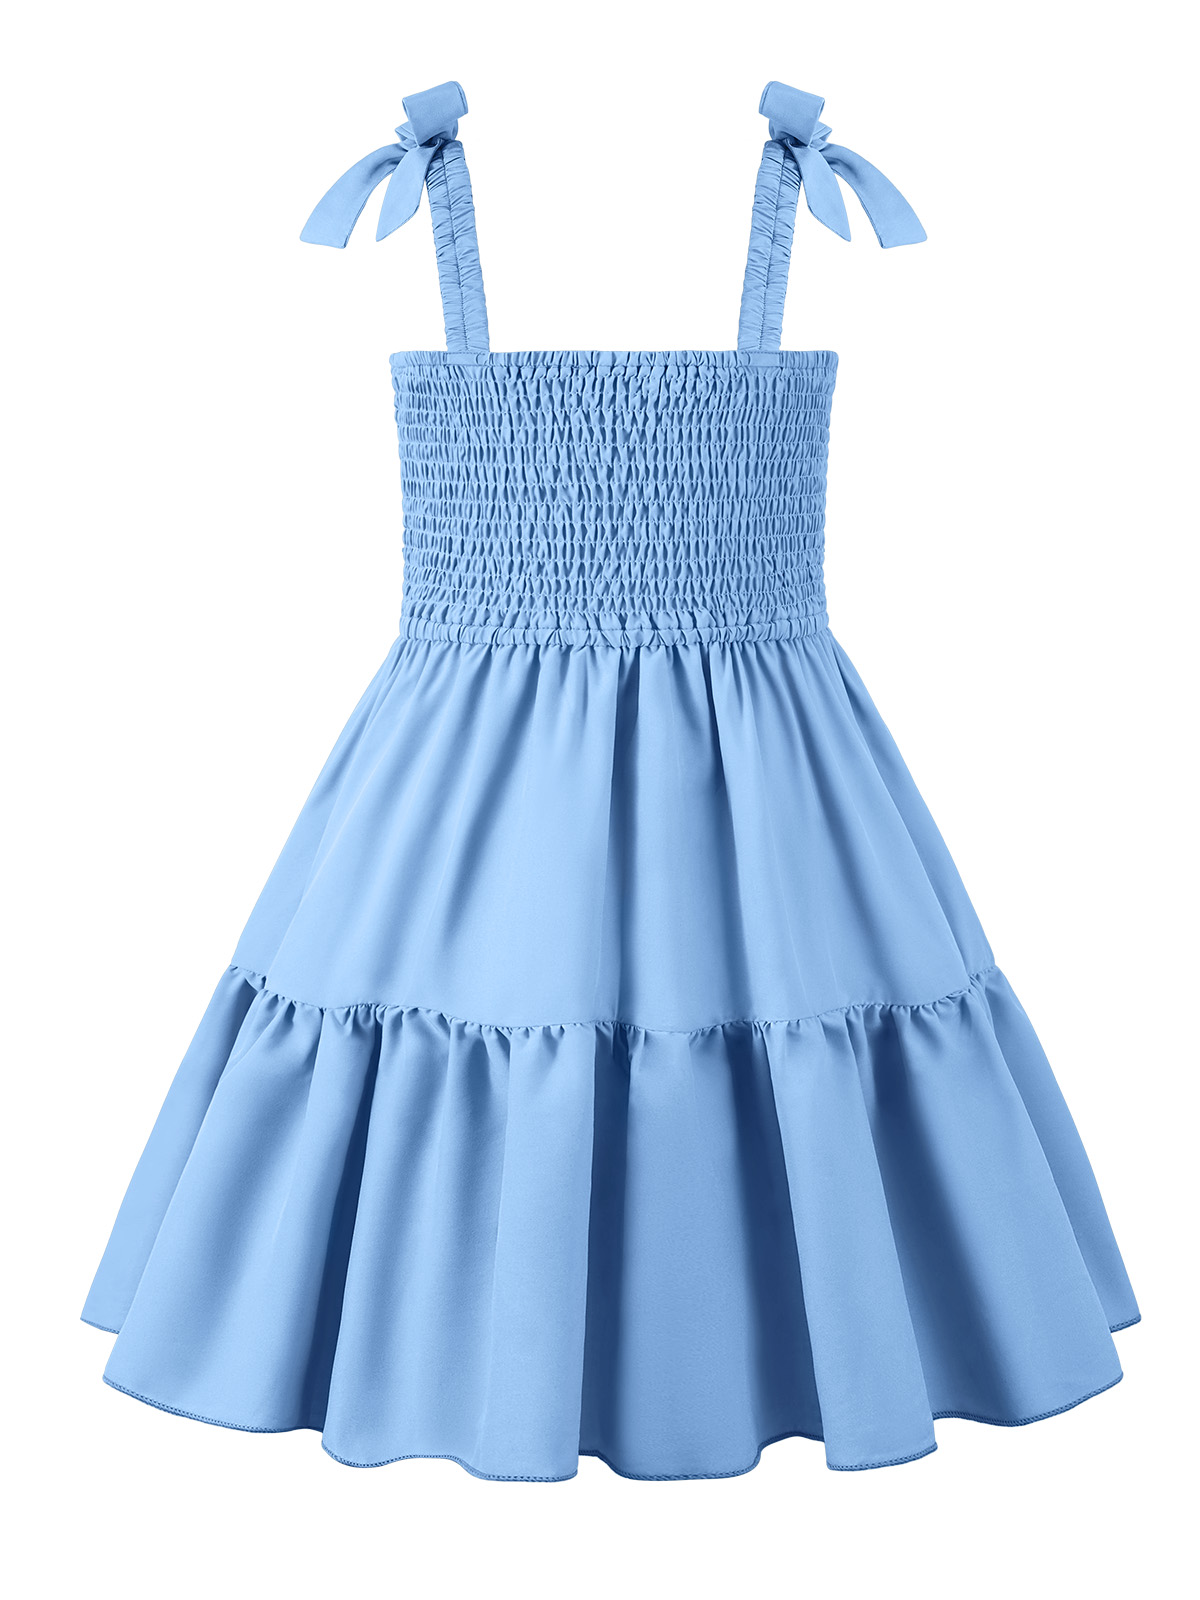 Art Class Smocked Sleeveless Dress Girls L 10 12 Coral Peach Blue Beachy  Summer